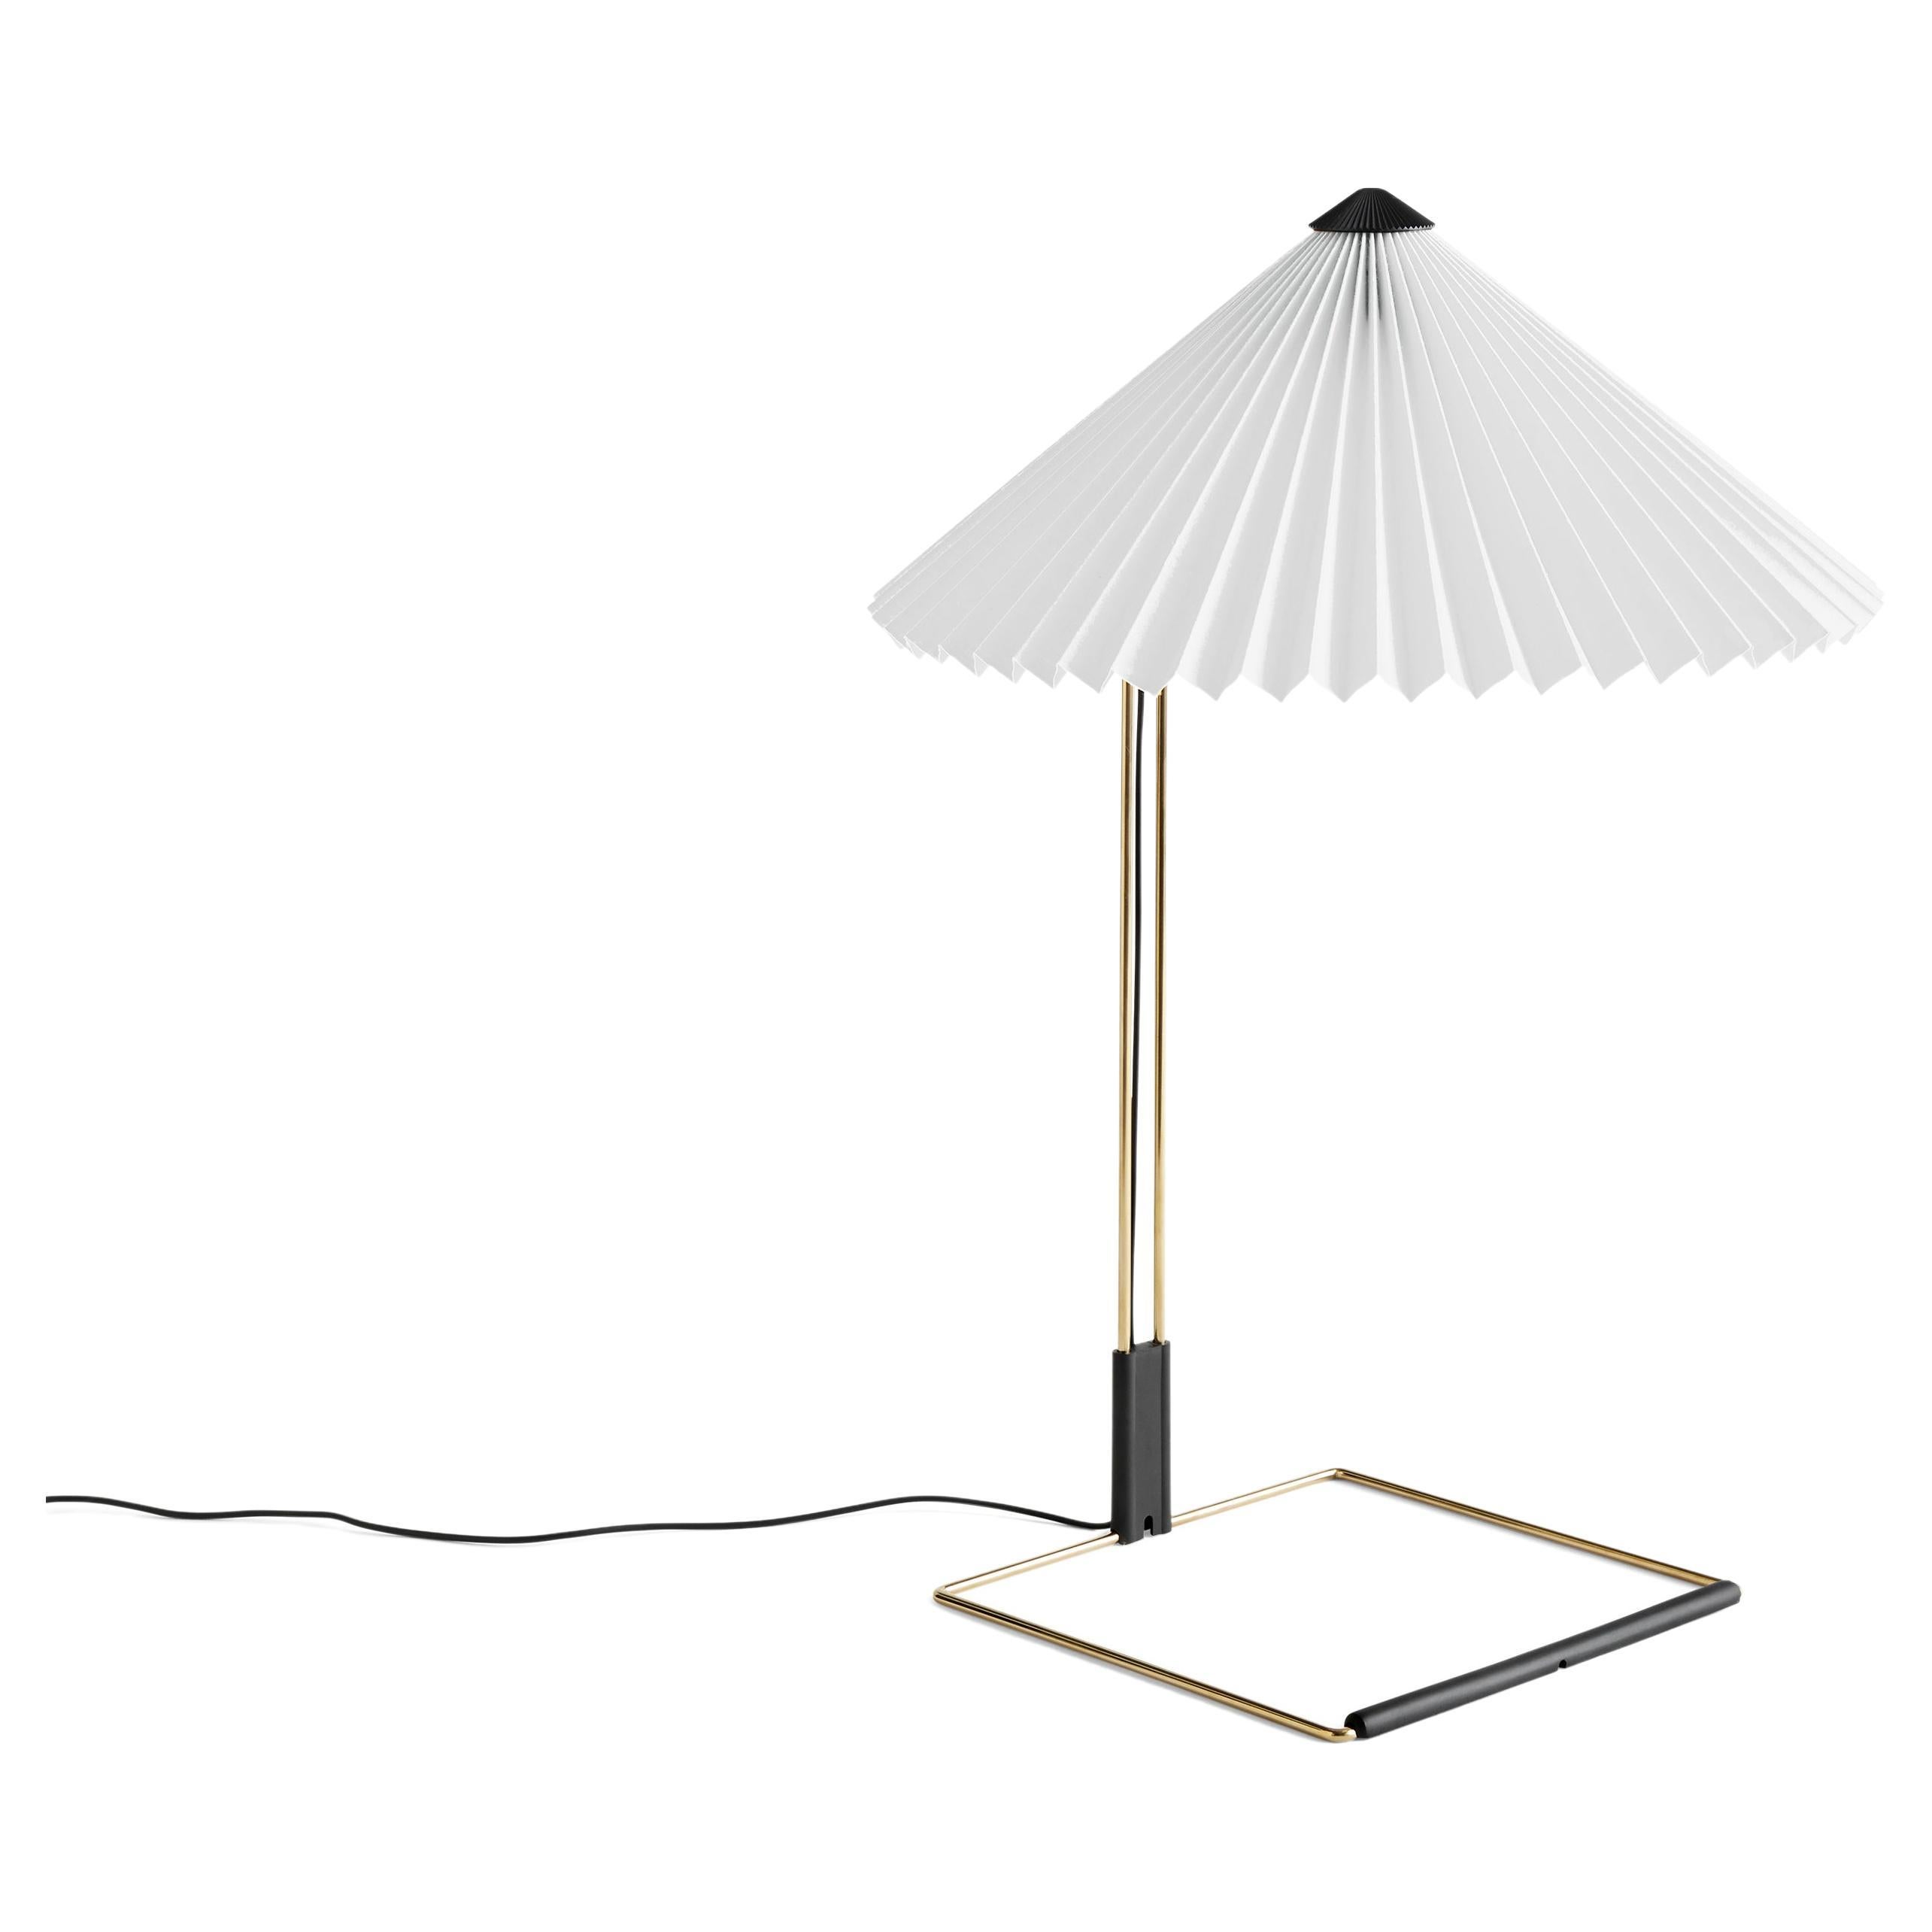 Lampe à poser Matin, 38 cm - Blanc par Inga Sempé pour Hay